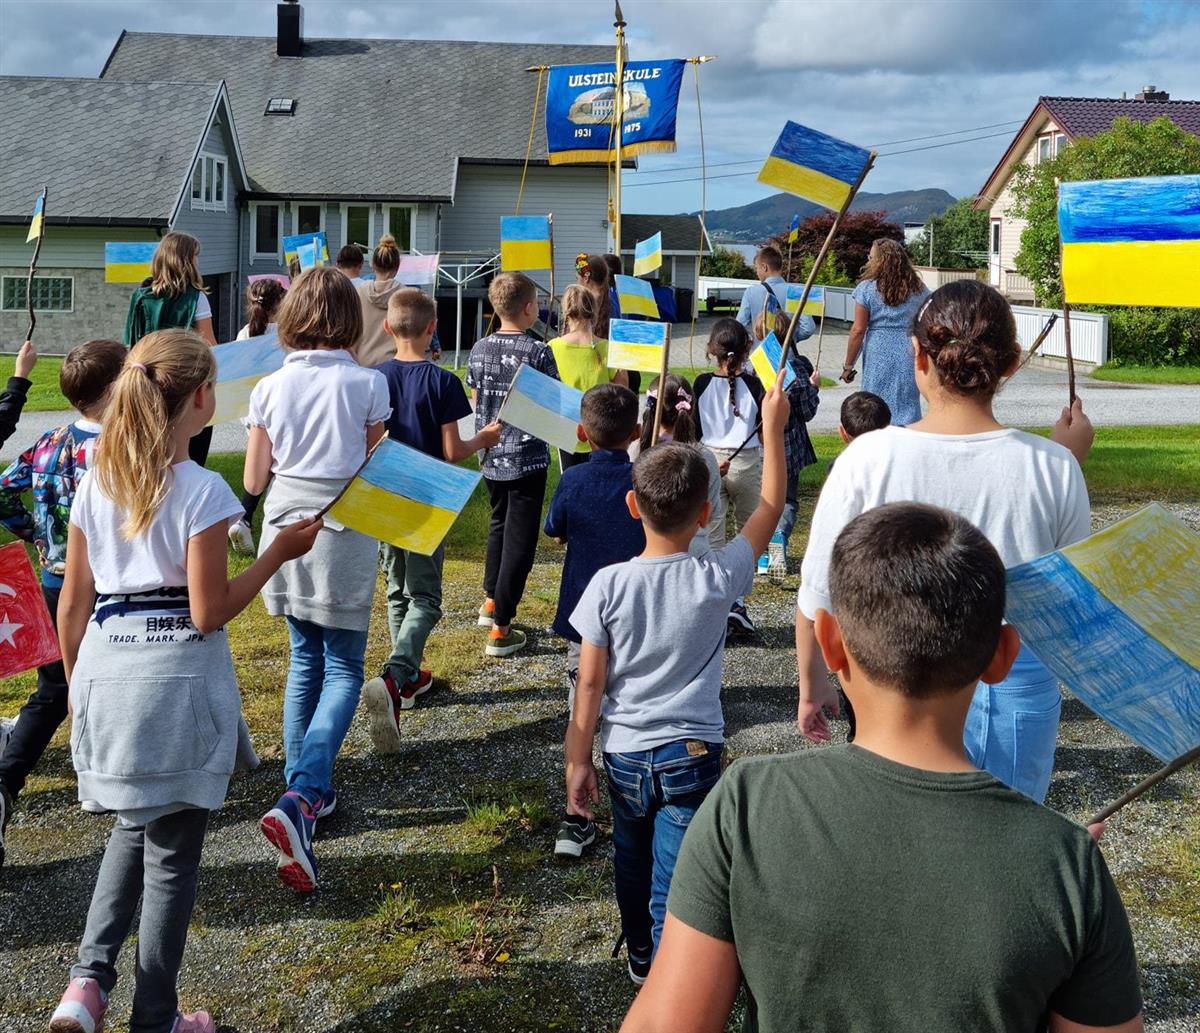 Barn i tog med ukrainske flagg. - Klikk for stort bilete